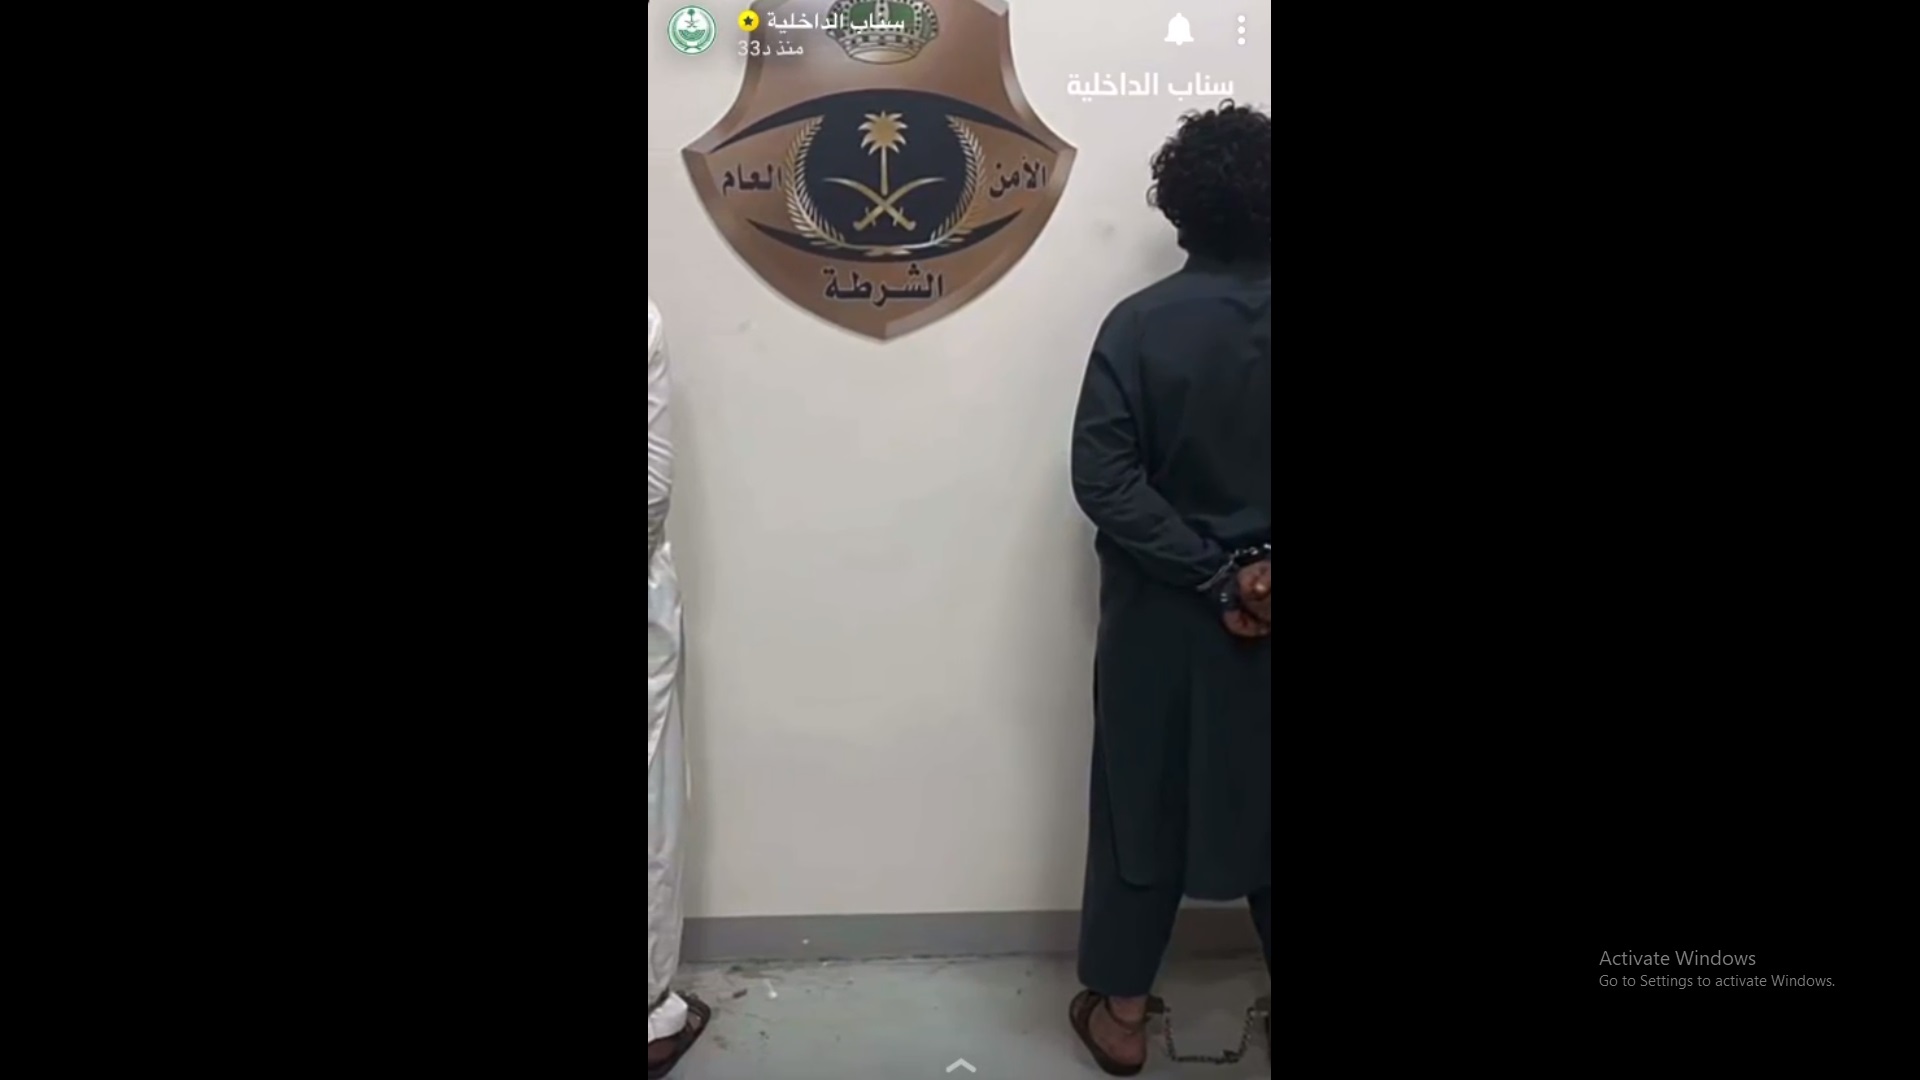 صورة القبض على مقيمين تباهى أحدهما بأموال مجهولة المصدر في مكة المكرمة